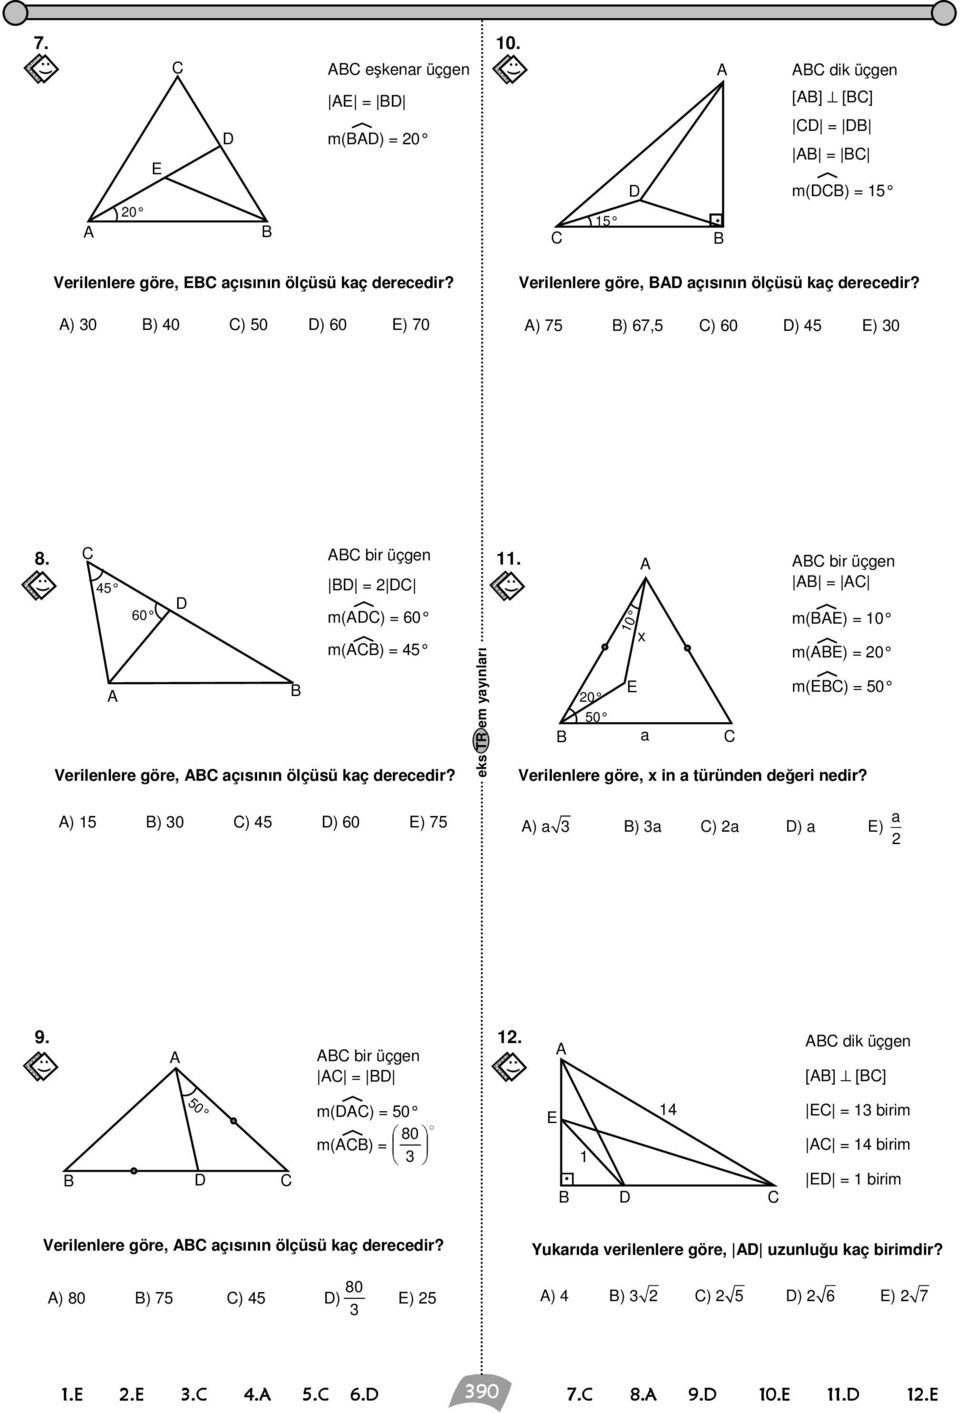 ) 1 ) 0 ) ) 0 ) 7 bir üçgen = m() = 0 m() = 11 0 0 10 x a bir üçgen = m() = 10 m() = 0 m() = 0 Verilenlere göre, x in a türünden değeri nedir?